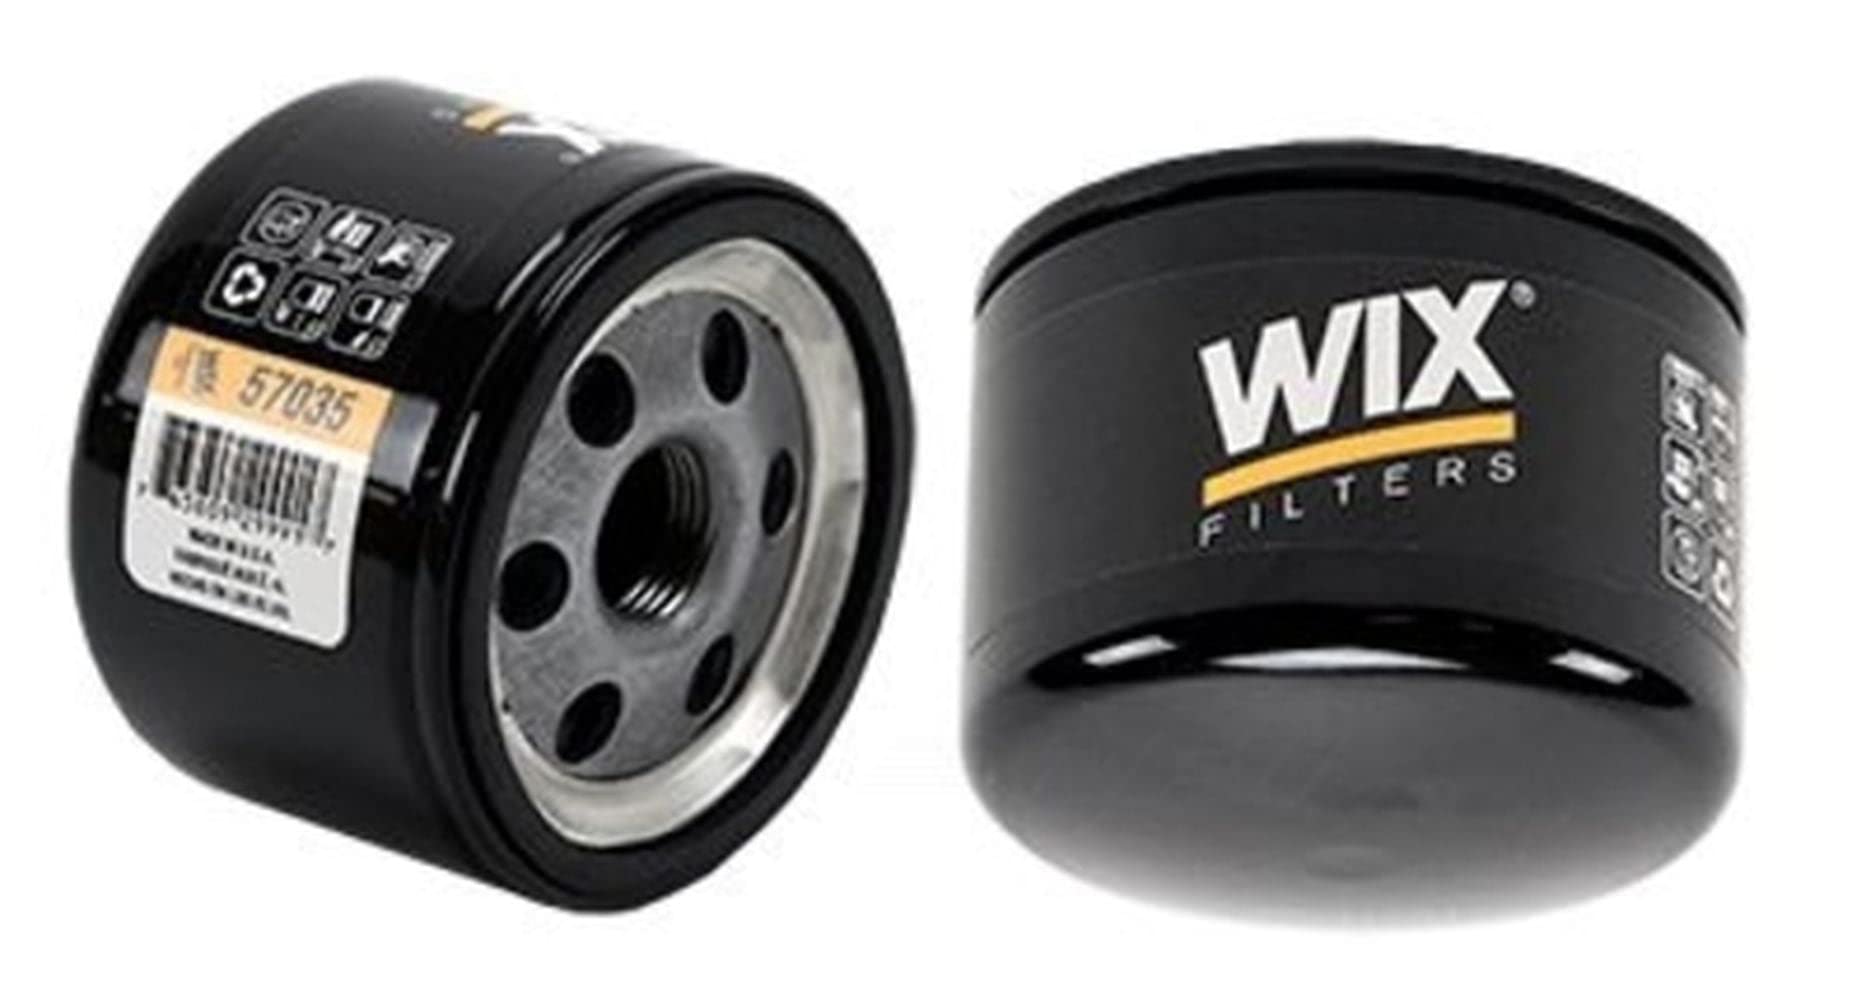 WIX FILTERS 57035 Motorblöcke von Wix